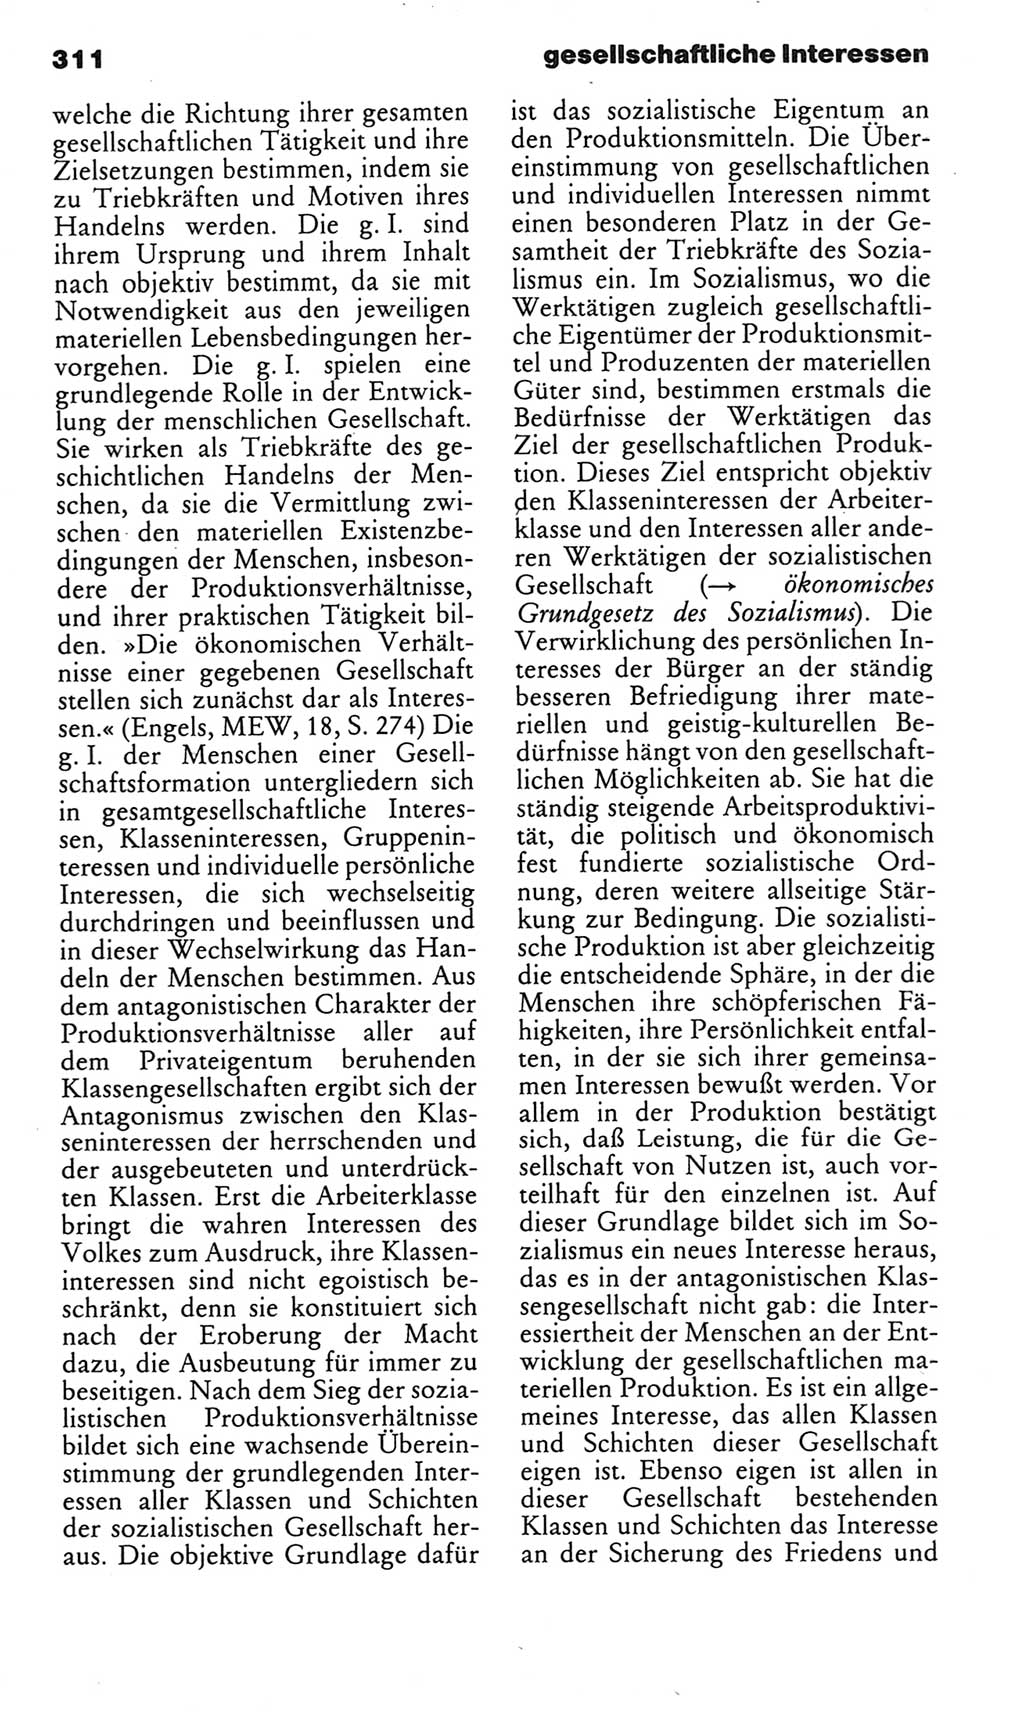 Kleines politisches Wörterbuch [Deutsche Demokratische Republik (DDR)] 1983, Seite 311 (Kl. pol. Wb. DDR 1983, S. 311)